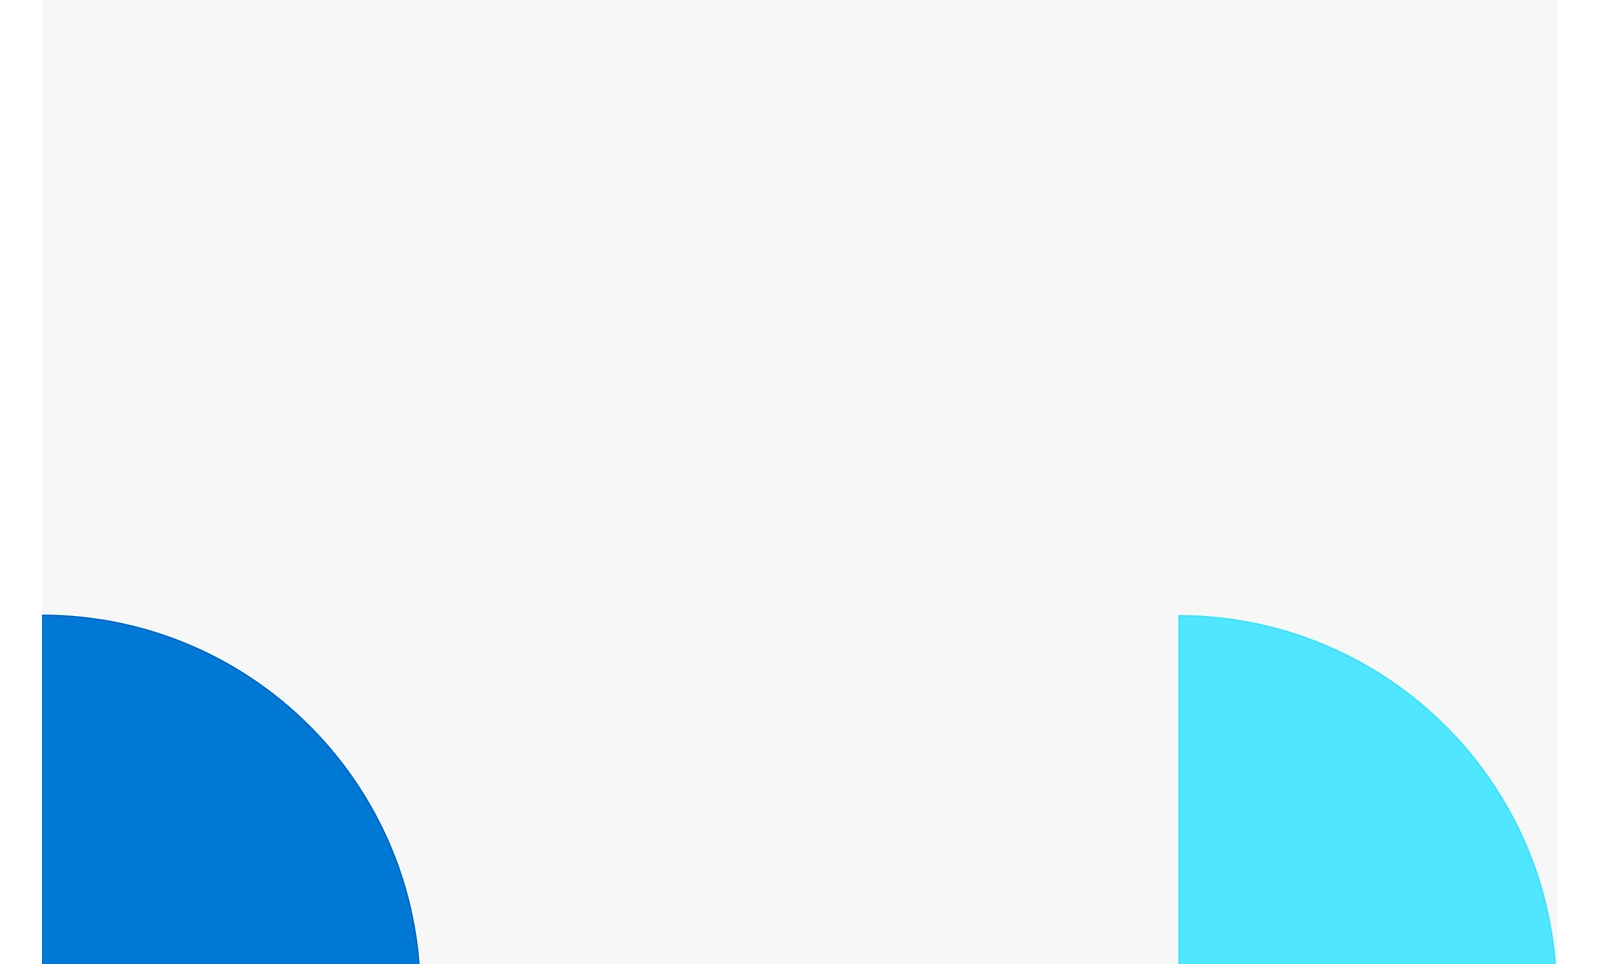 Dos formas circulares superpuestas con un fondo blanco, una azul a la izquierda y otra más clara a la derecha.